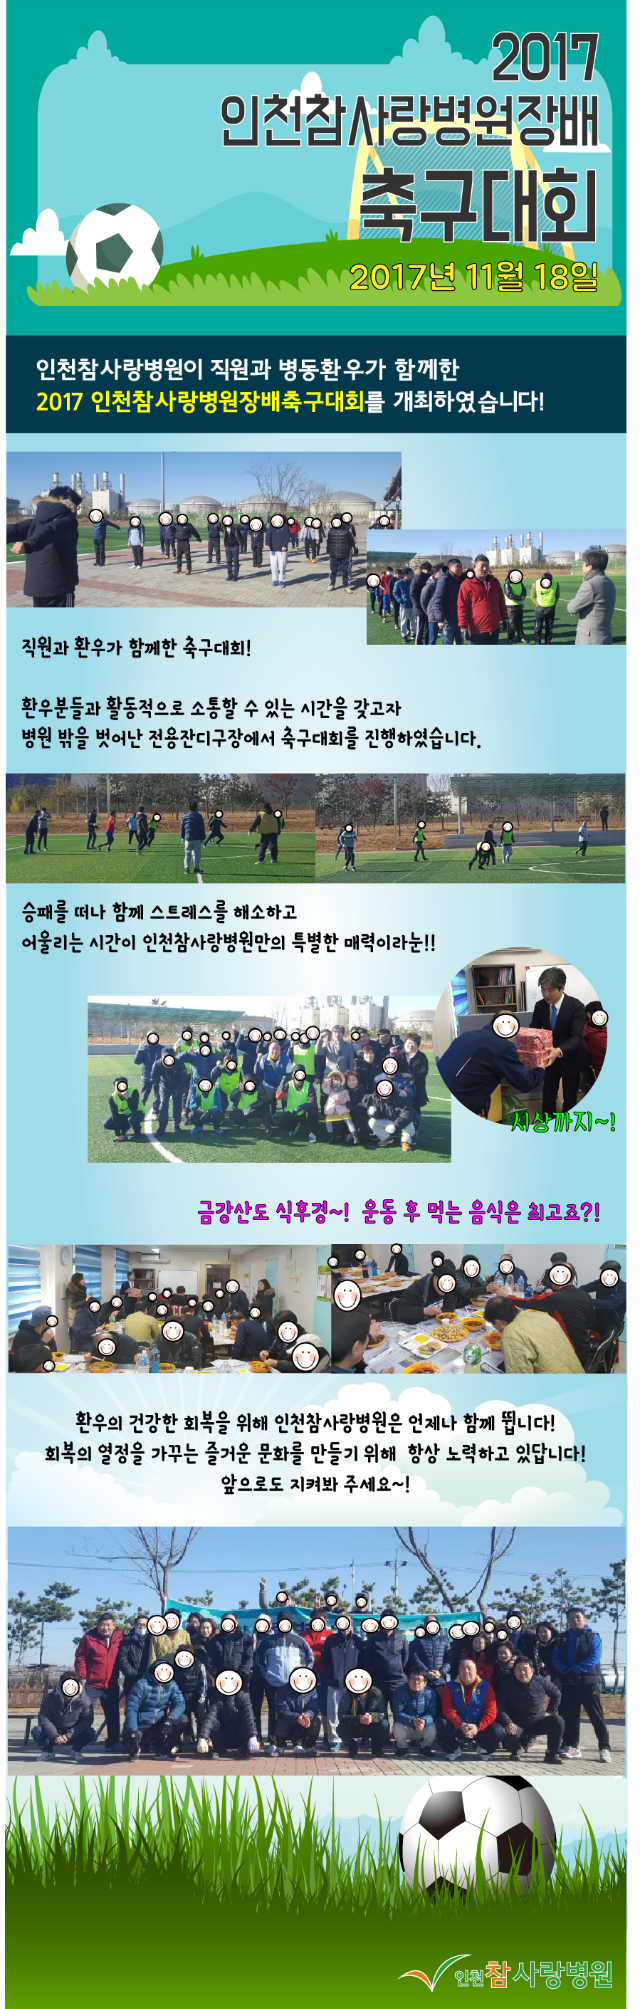 사본 -2017참사랑소식 11월-축구대회.png